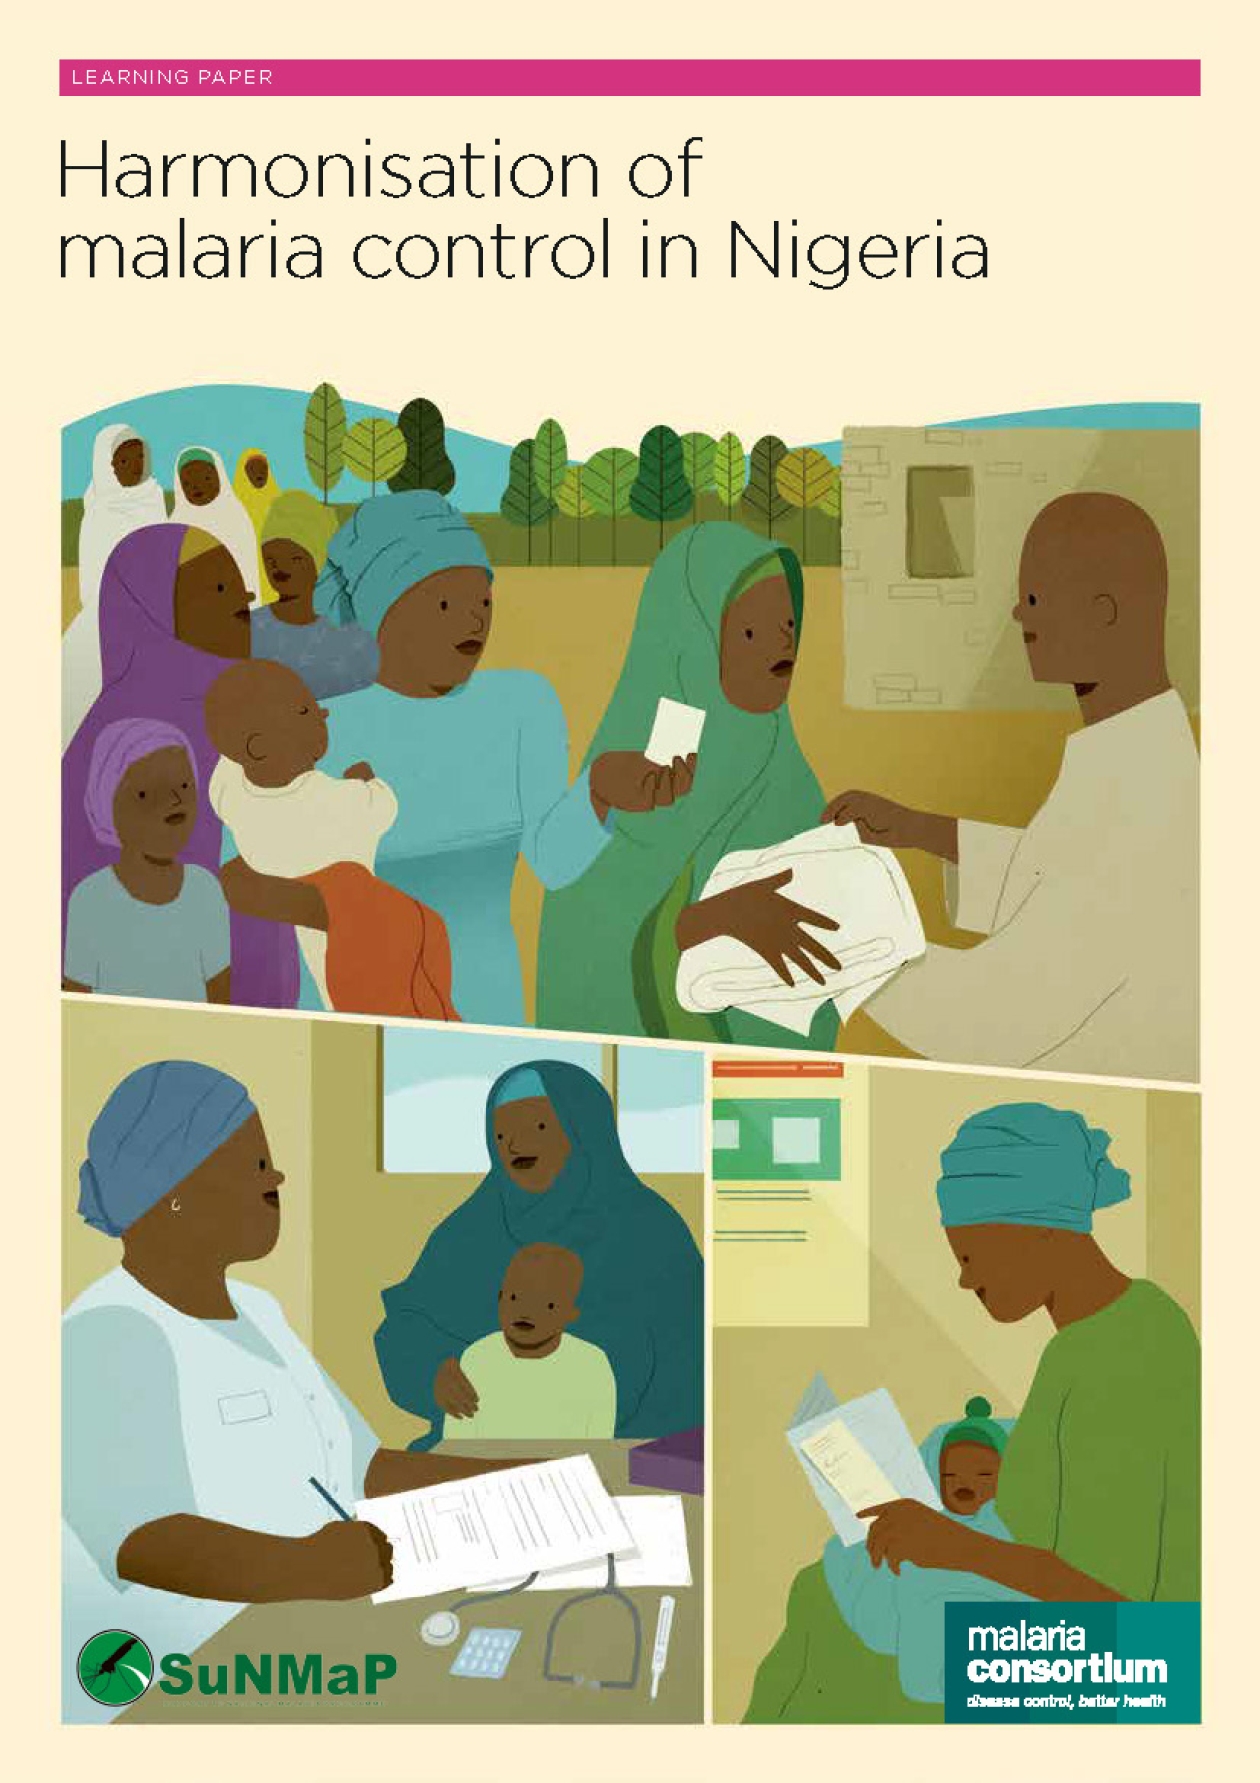 a case study of malaria in nigeria